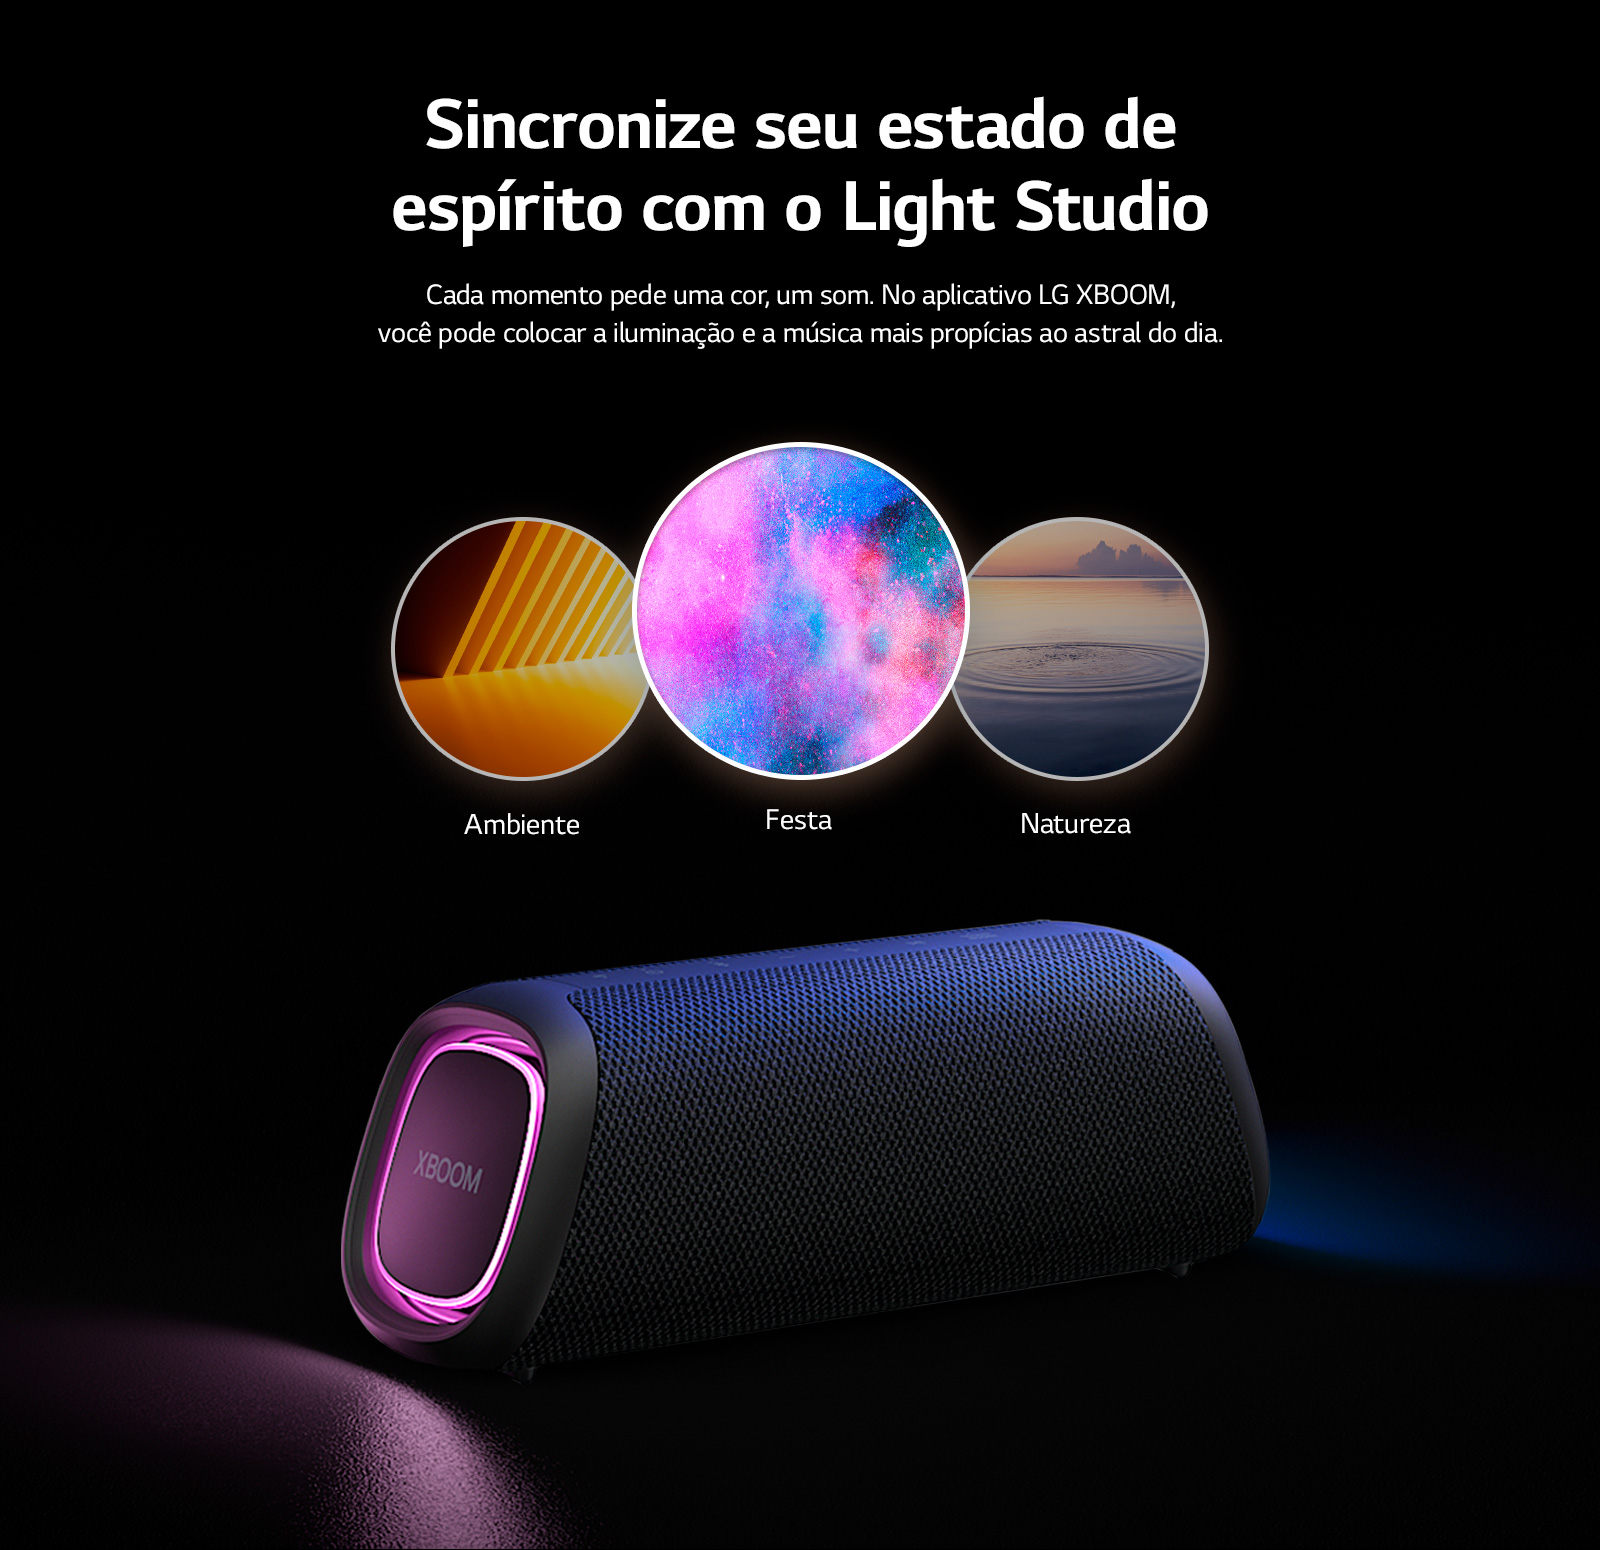 Imagem mostrando a LG XBOOM Go de lado com suas cores azuis e violeta, identificando que as cores dela podem ser ajustáveis com o aplicativo LG XBOOM Go